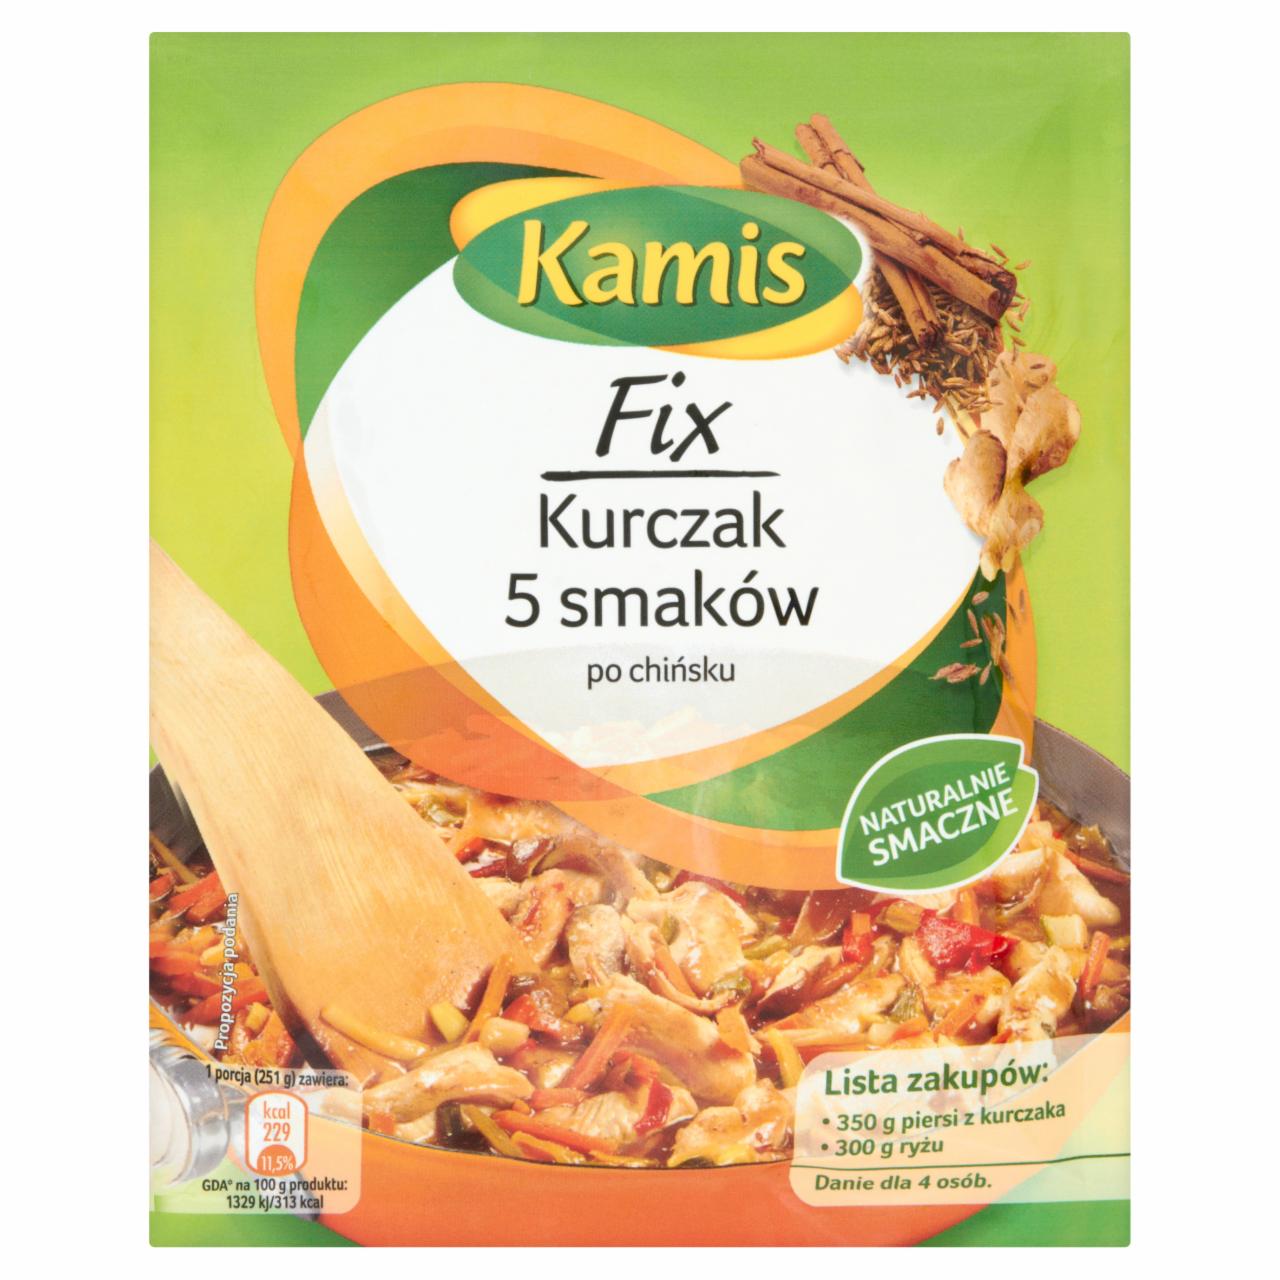 Zdjęcia - Kamis Fix Kurczak 5 smaków po chińsku 52 g